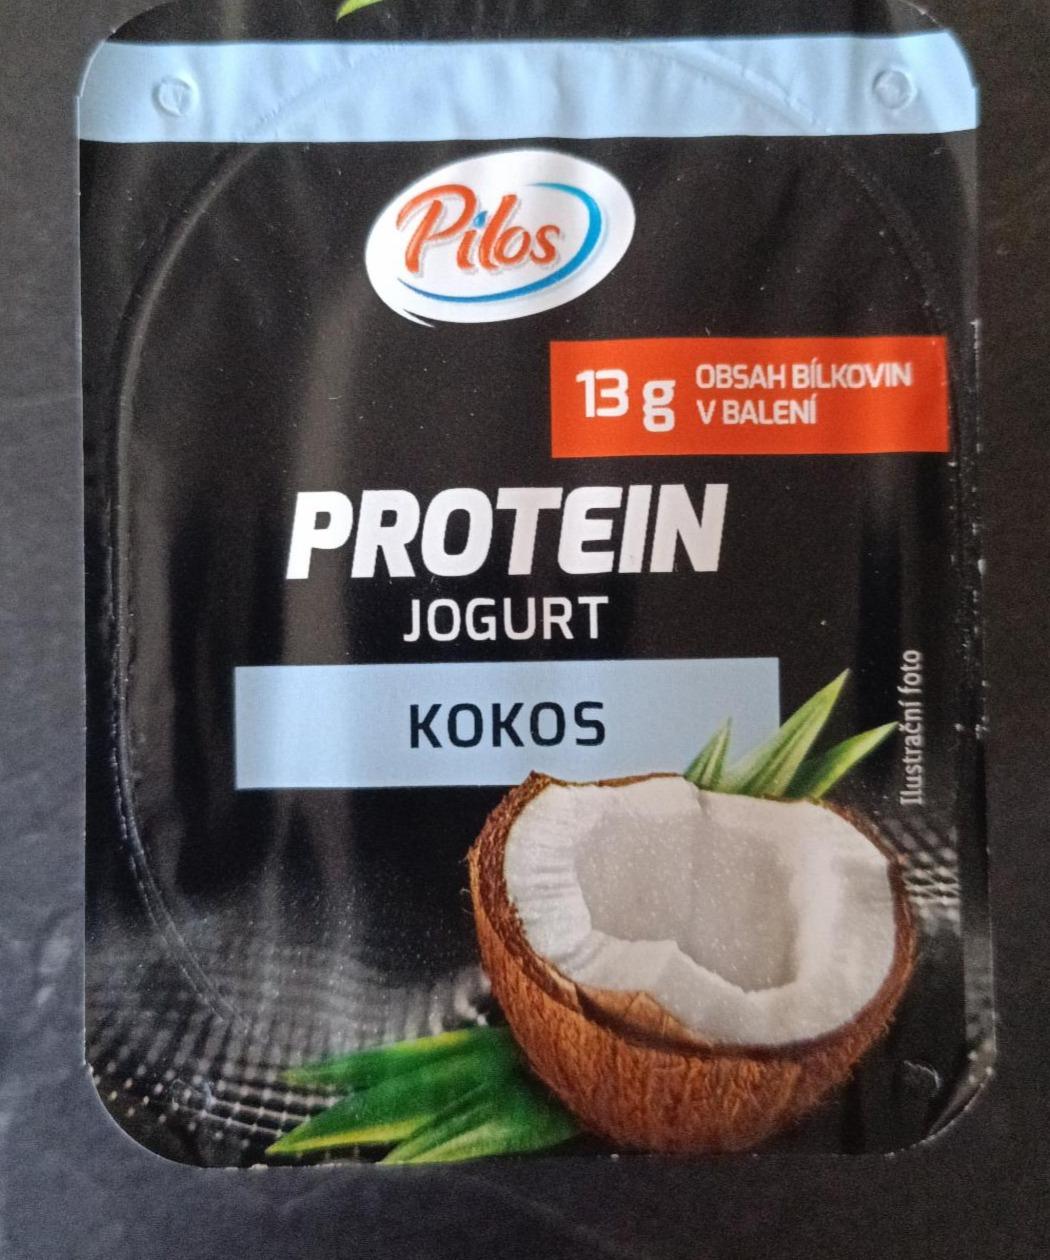 Fotografie - Protein Jogurt Kokos Pilos